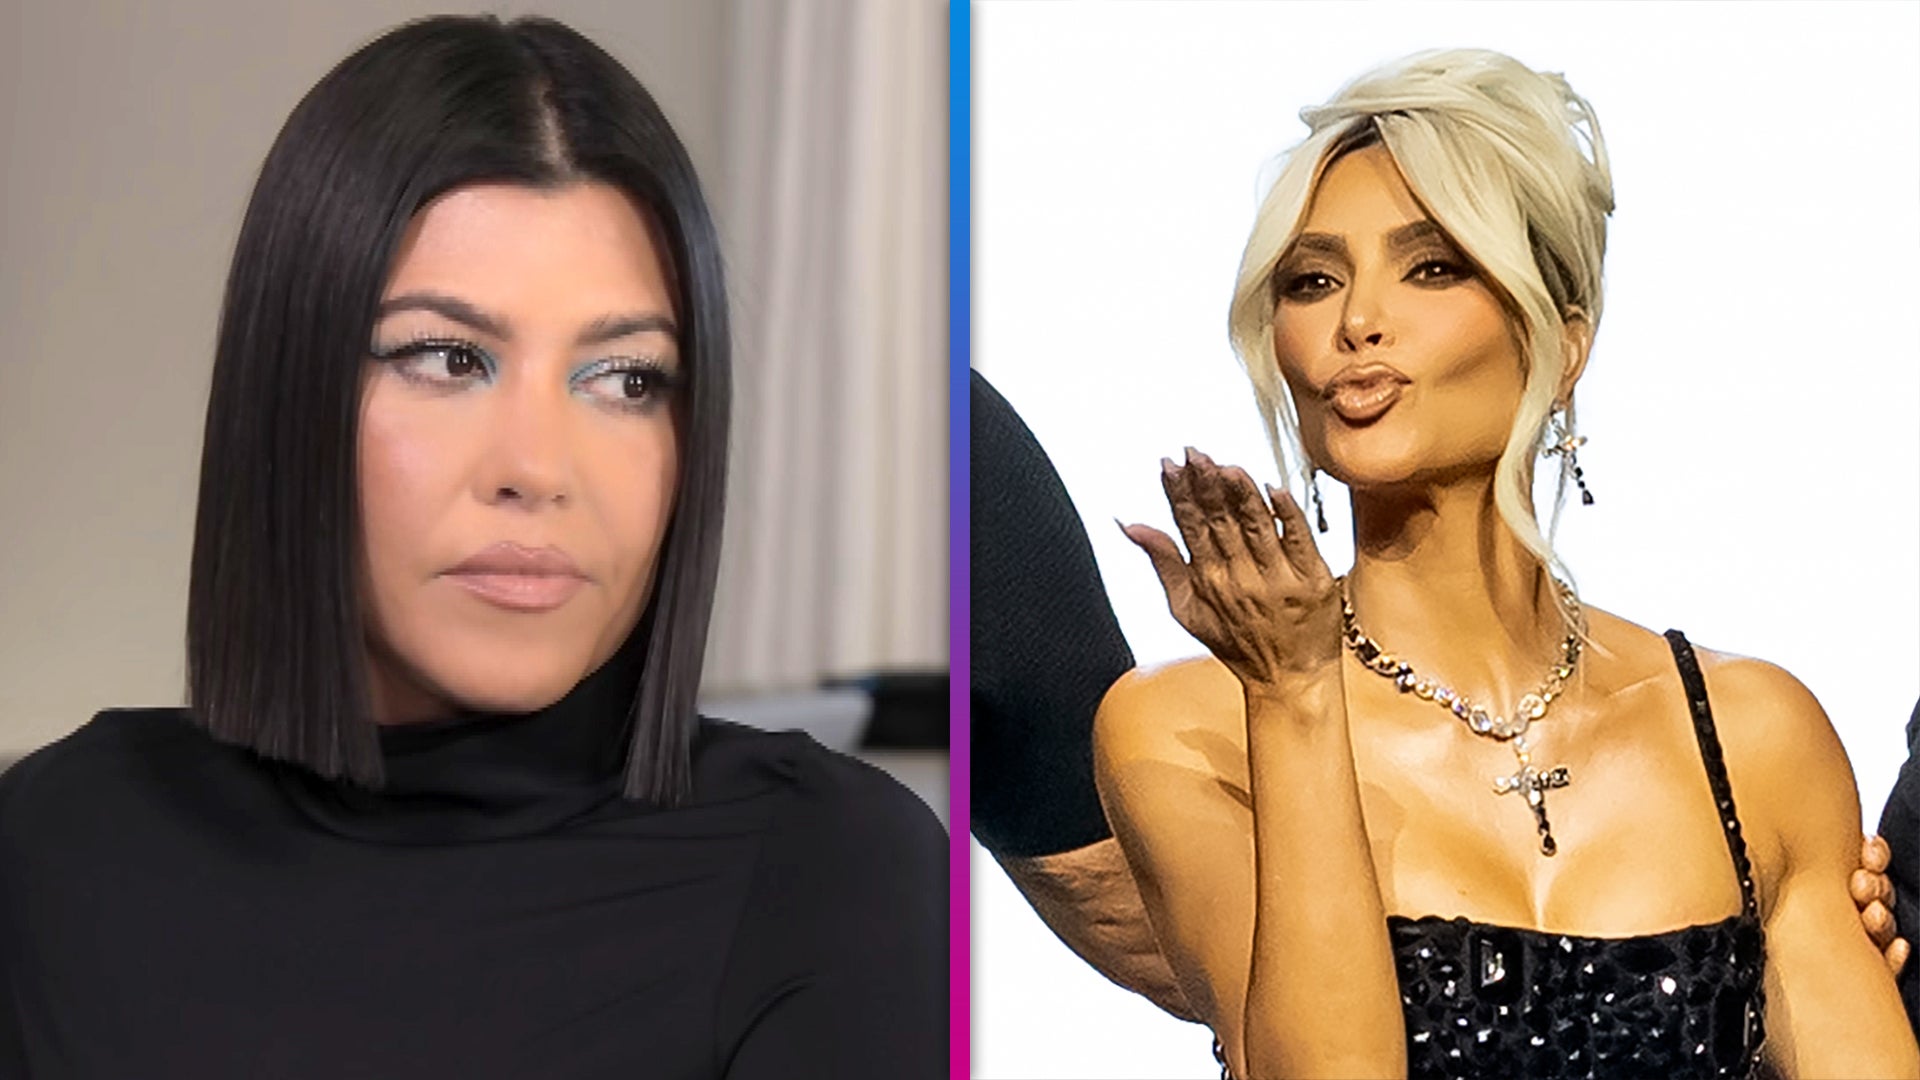 Kim Kardashian Face of New Dolce & Gabbana Campaign